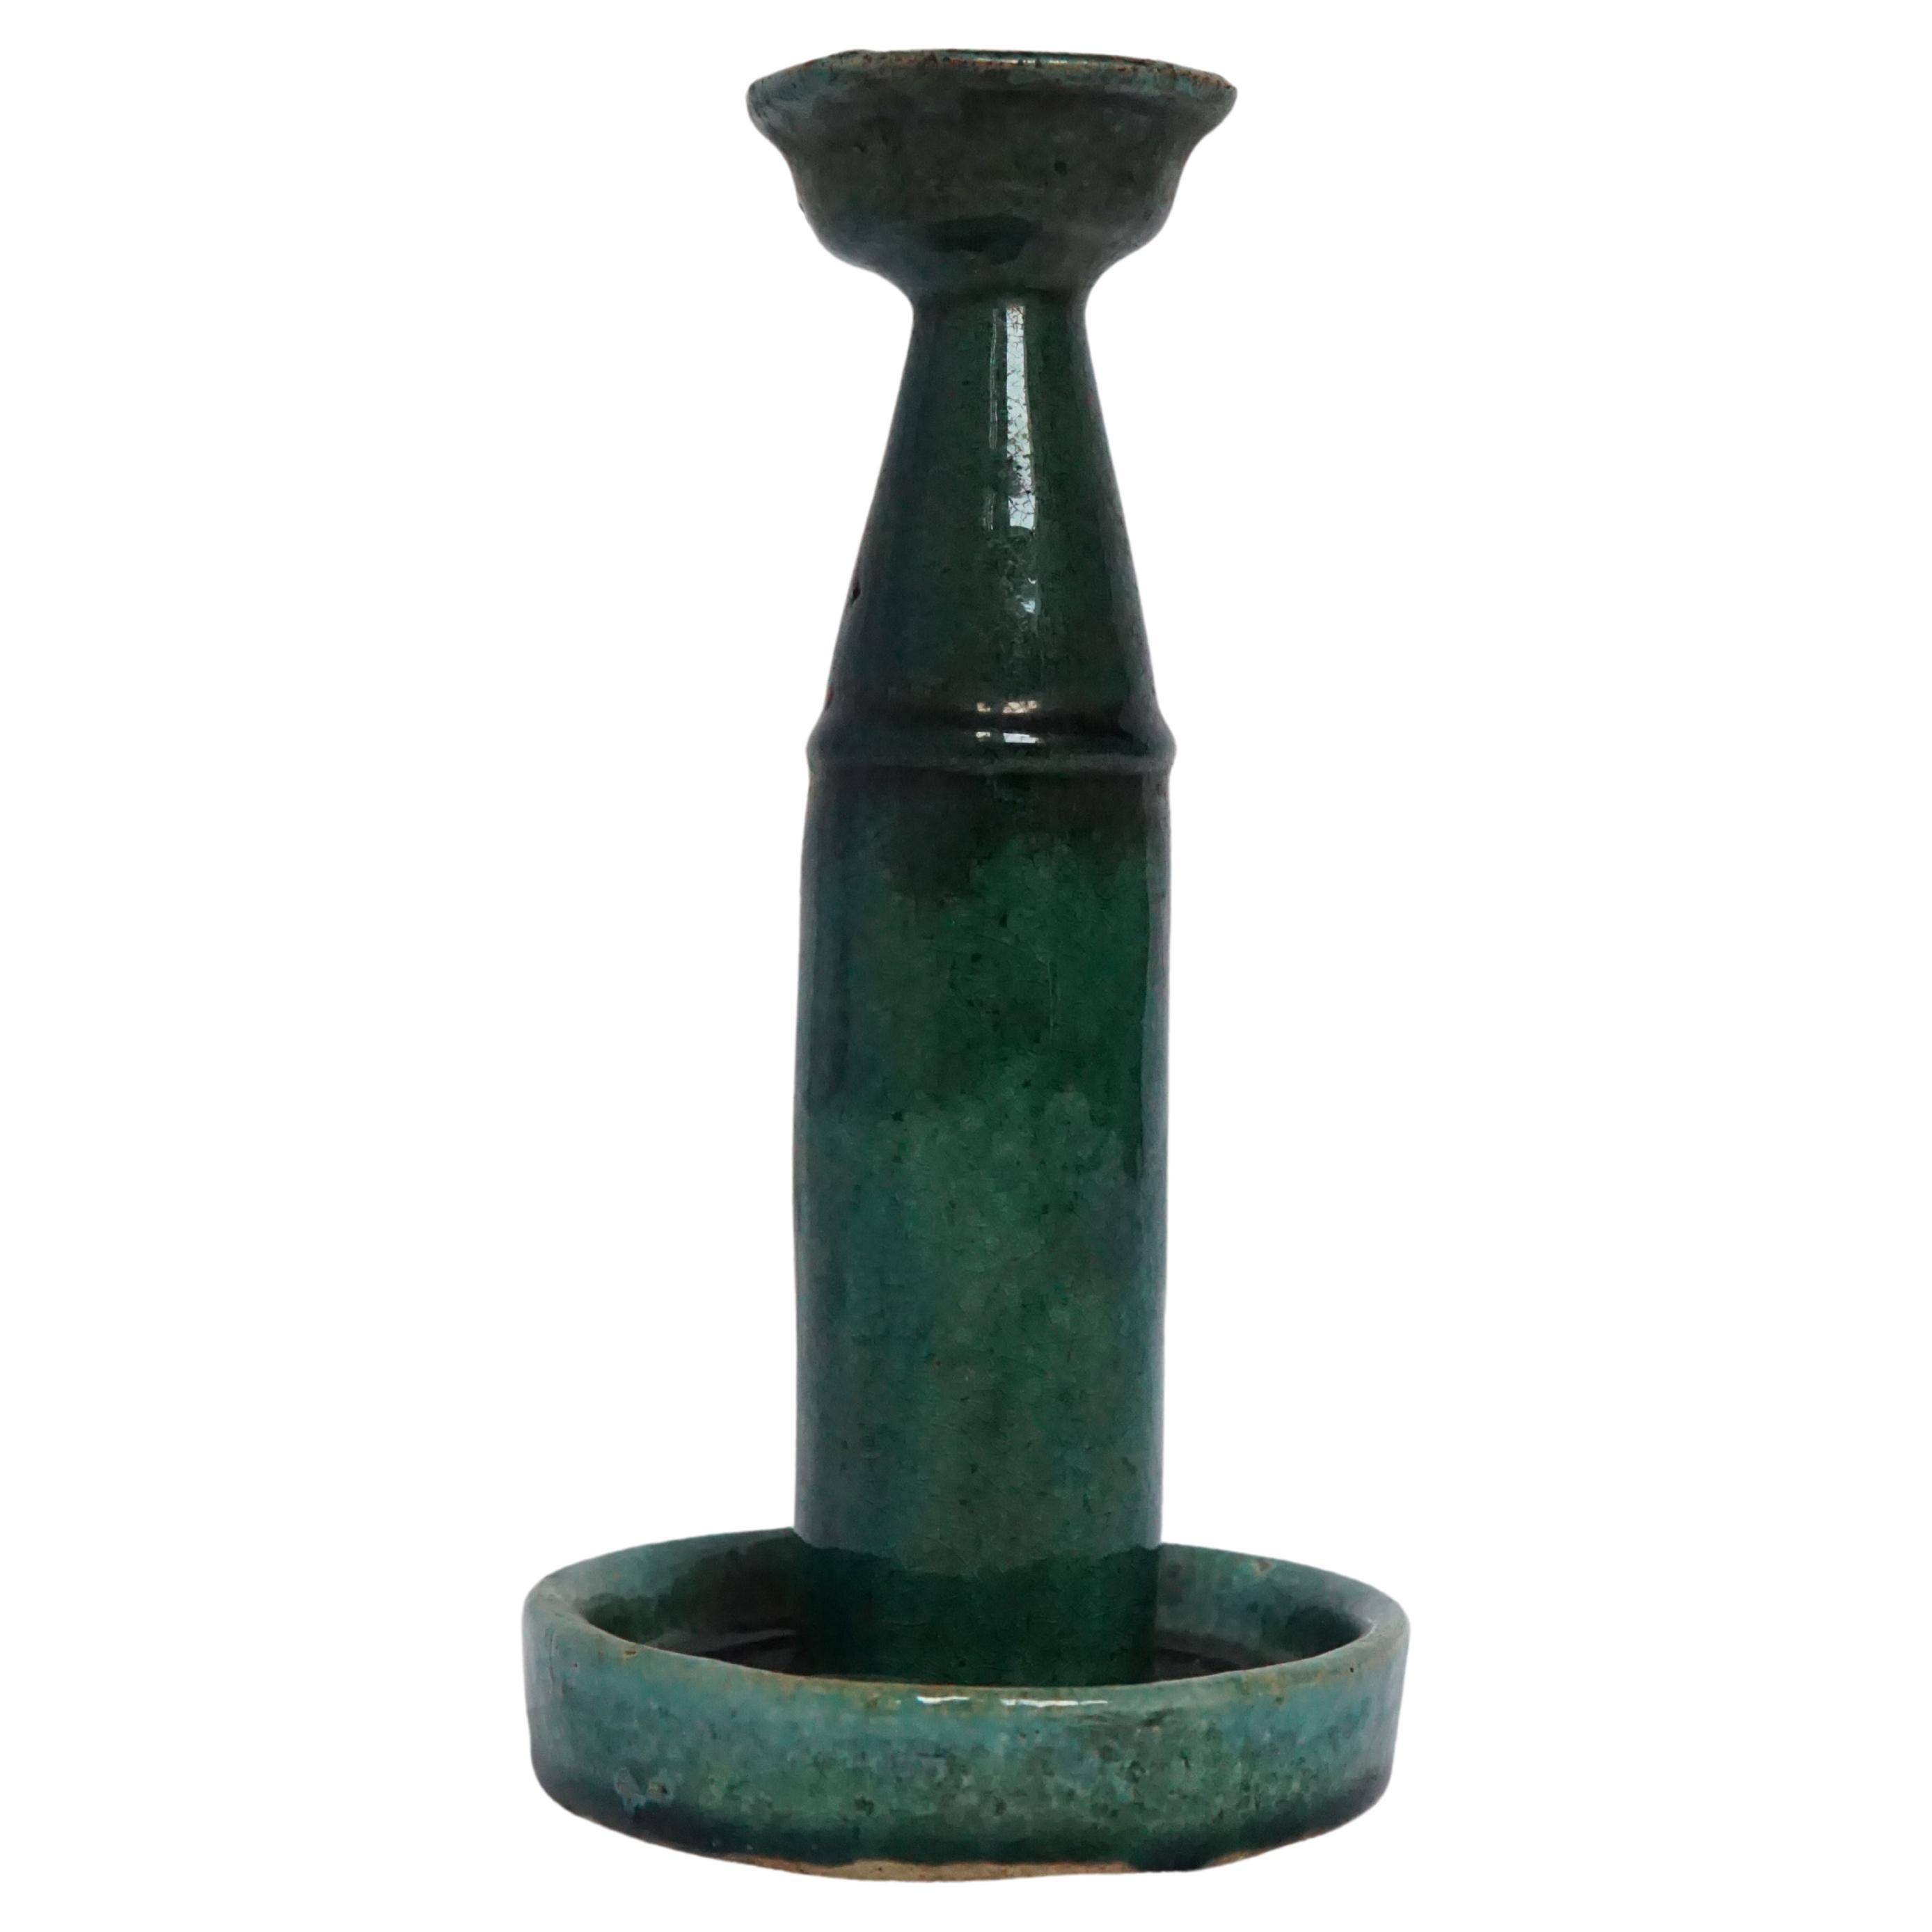 Chinesische Keramik 'Shiwan' Öllampe / Kerzenständer, grün glasiert, um 1950